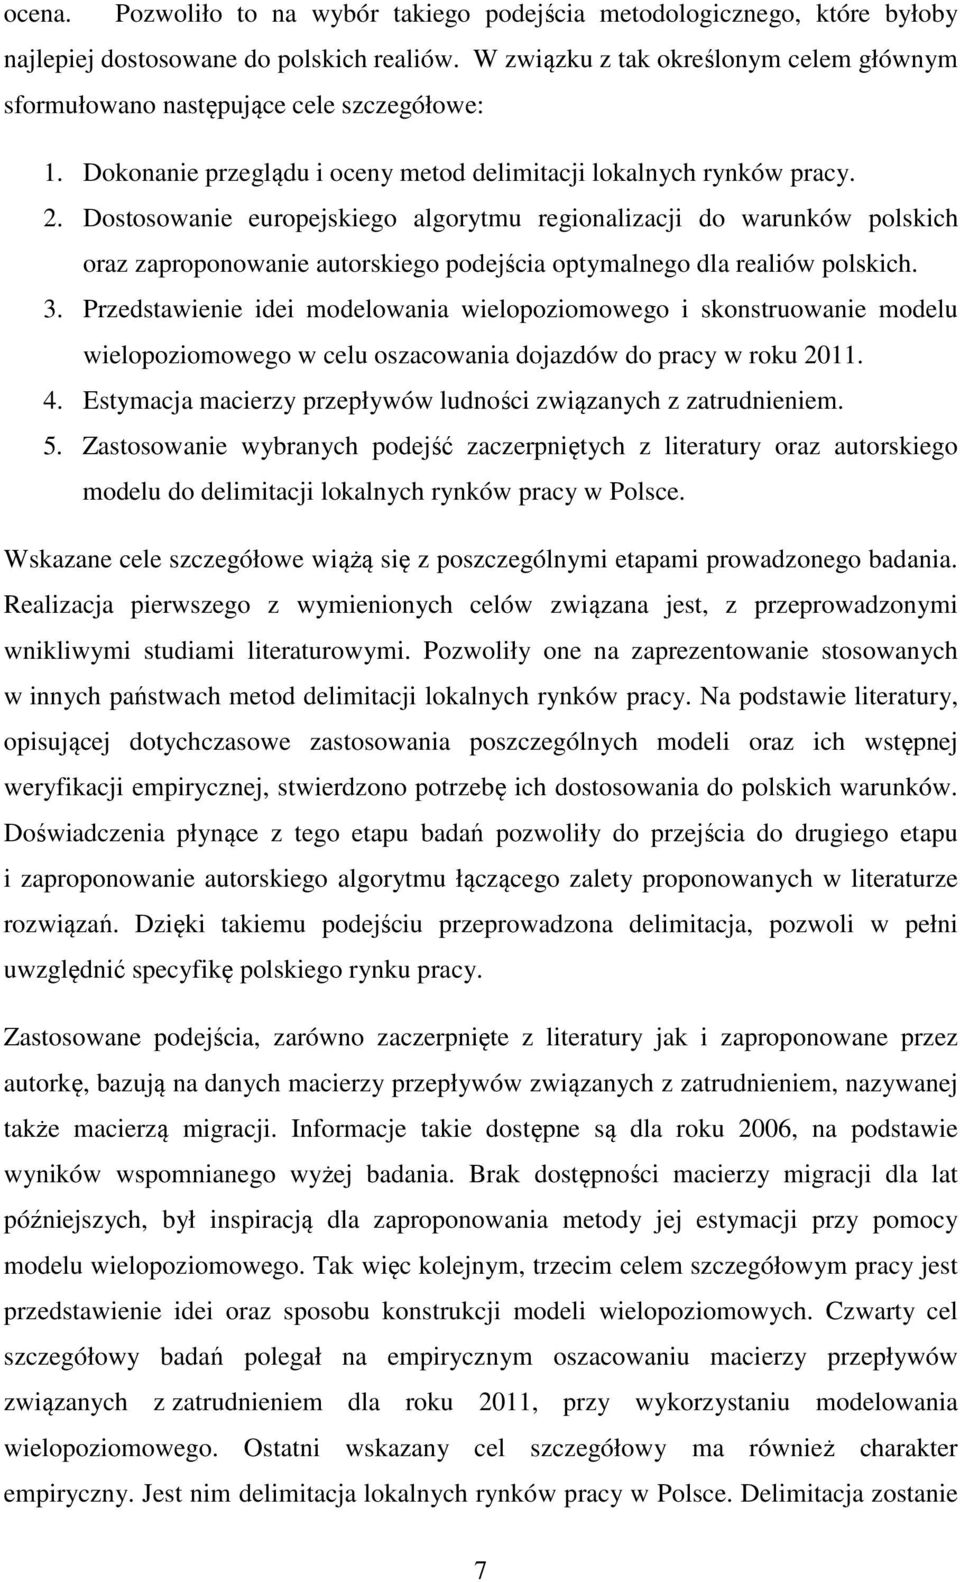 Dostosowanie europejskiego algorytmu regionalizacji do warunków polskich oraz zaproponowanie autorskiego podejścia optymalnego dla realiów polskich. 3.